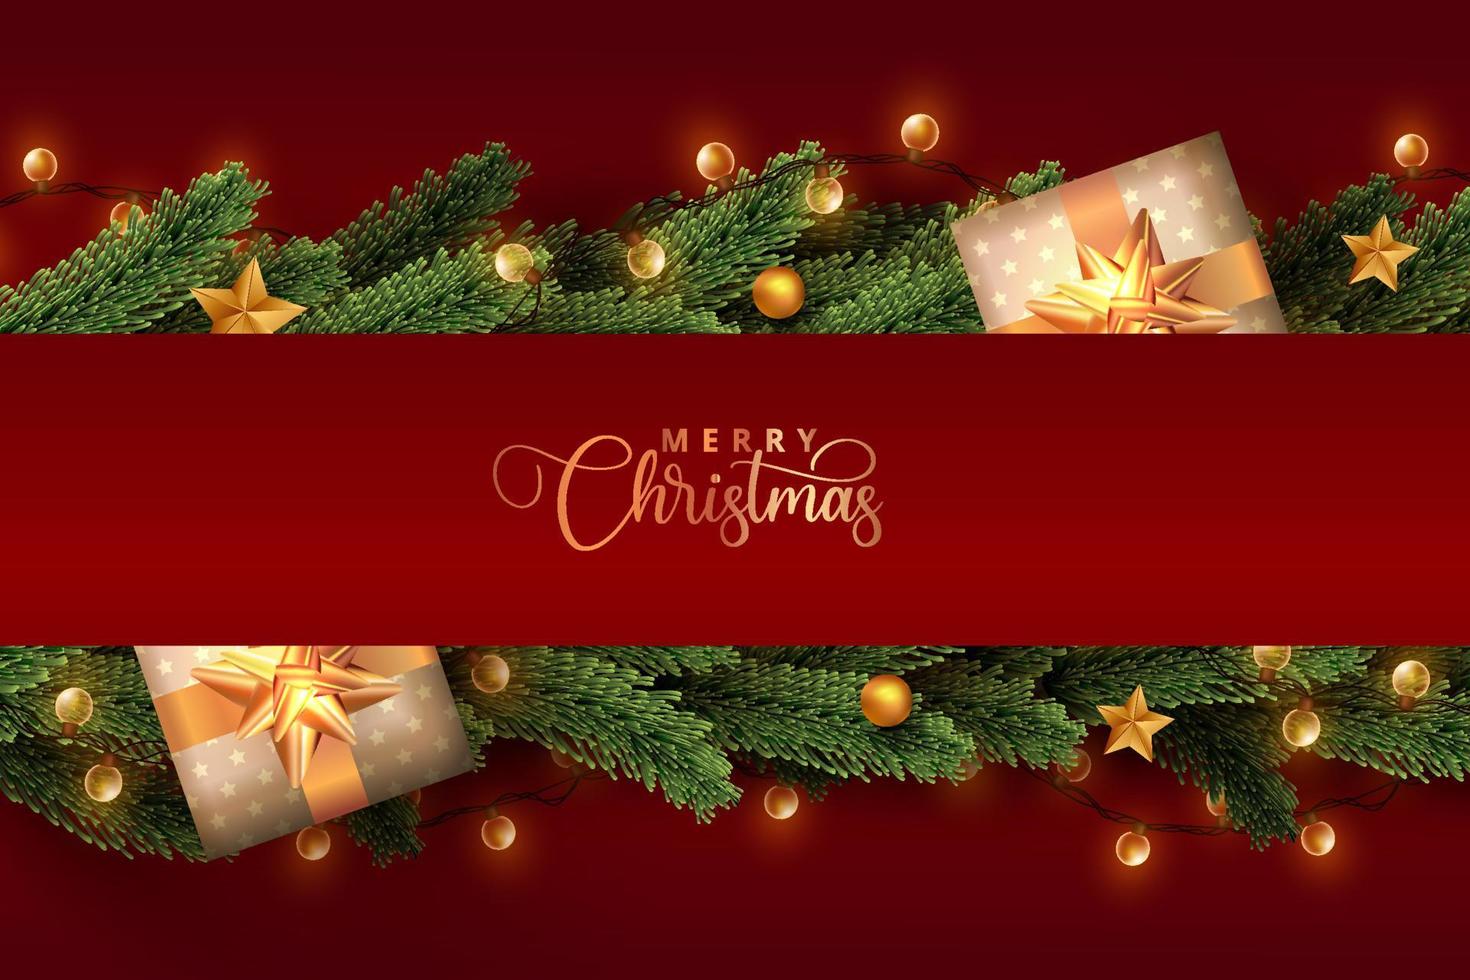 glänsande julbelysning inslagna i realistiska tallblad och presentförpackningar på röd bakgrund. god jul konceptdesign. vektor